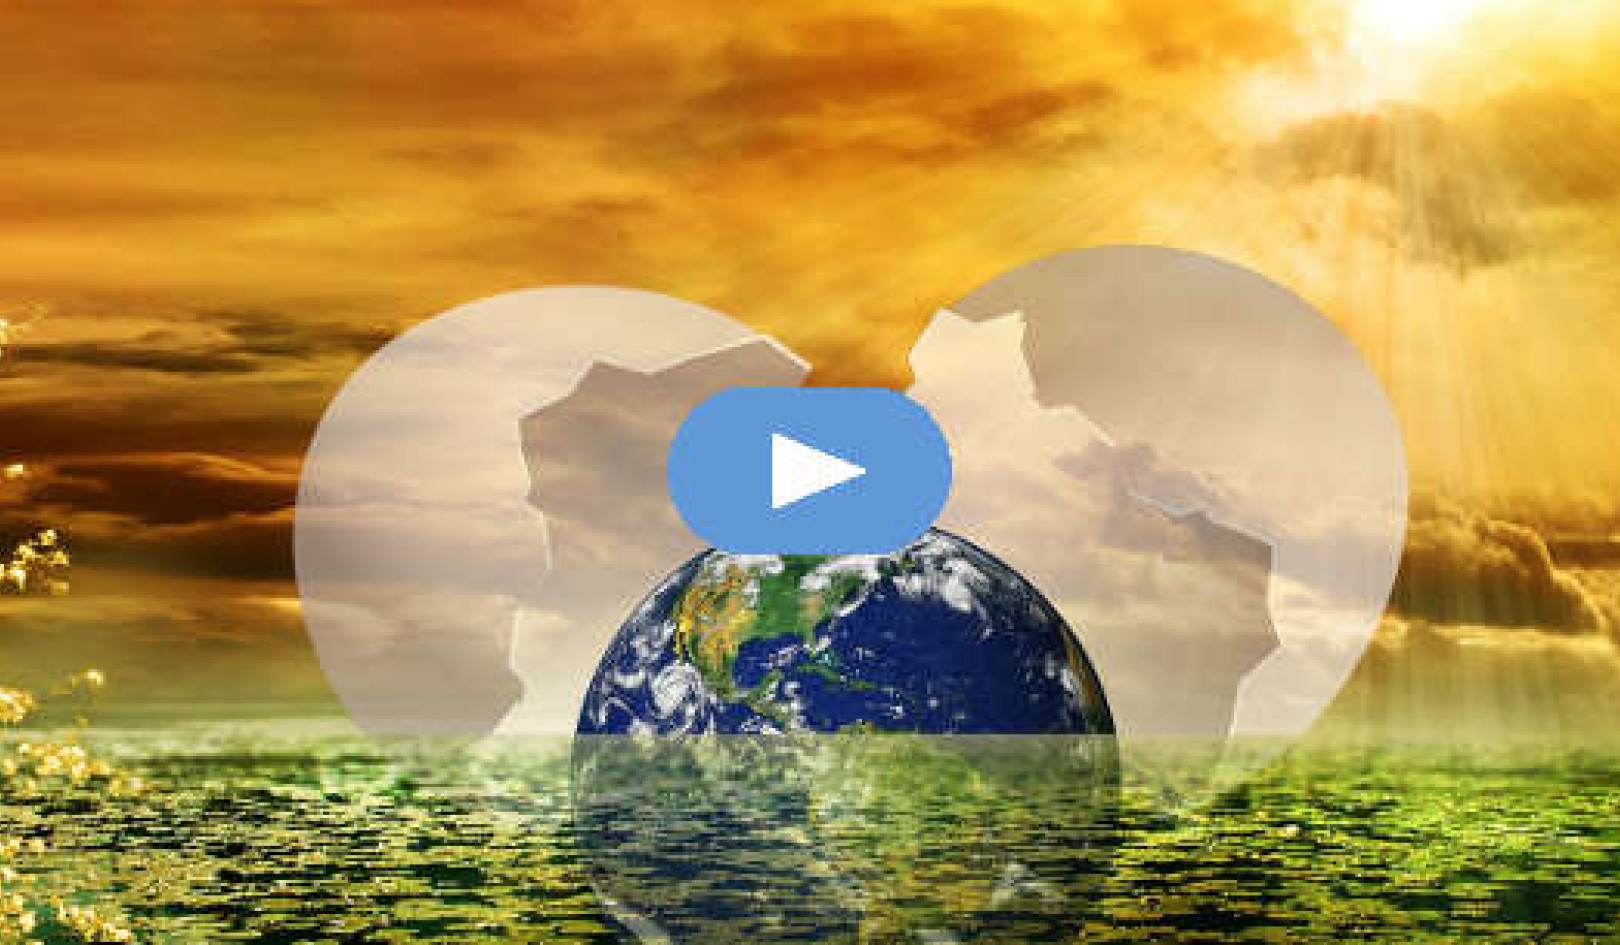 Trovare l'equilibrio all'interno dei cambiamenti dei mondi (Video)